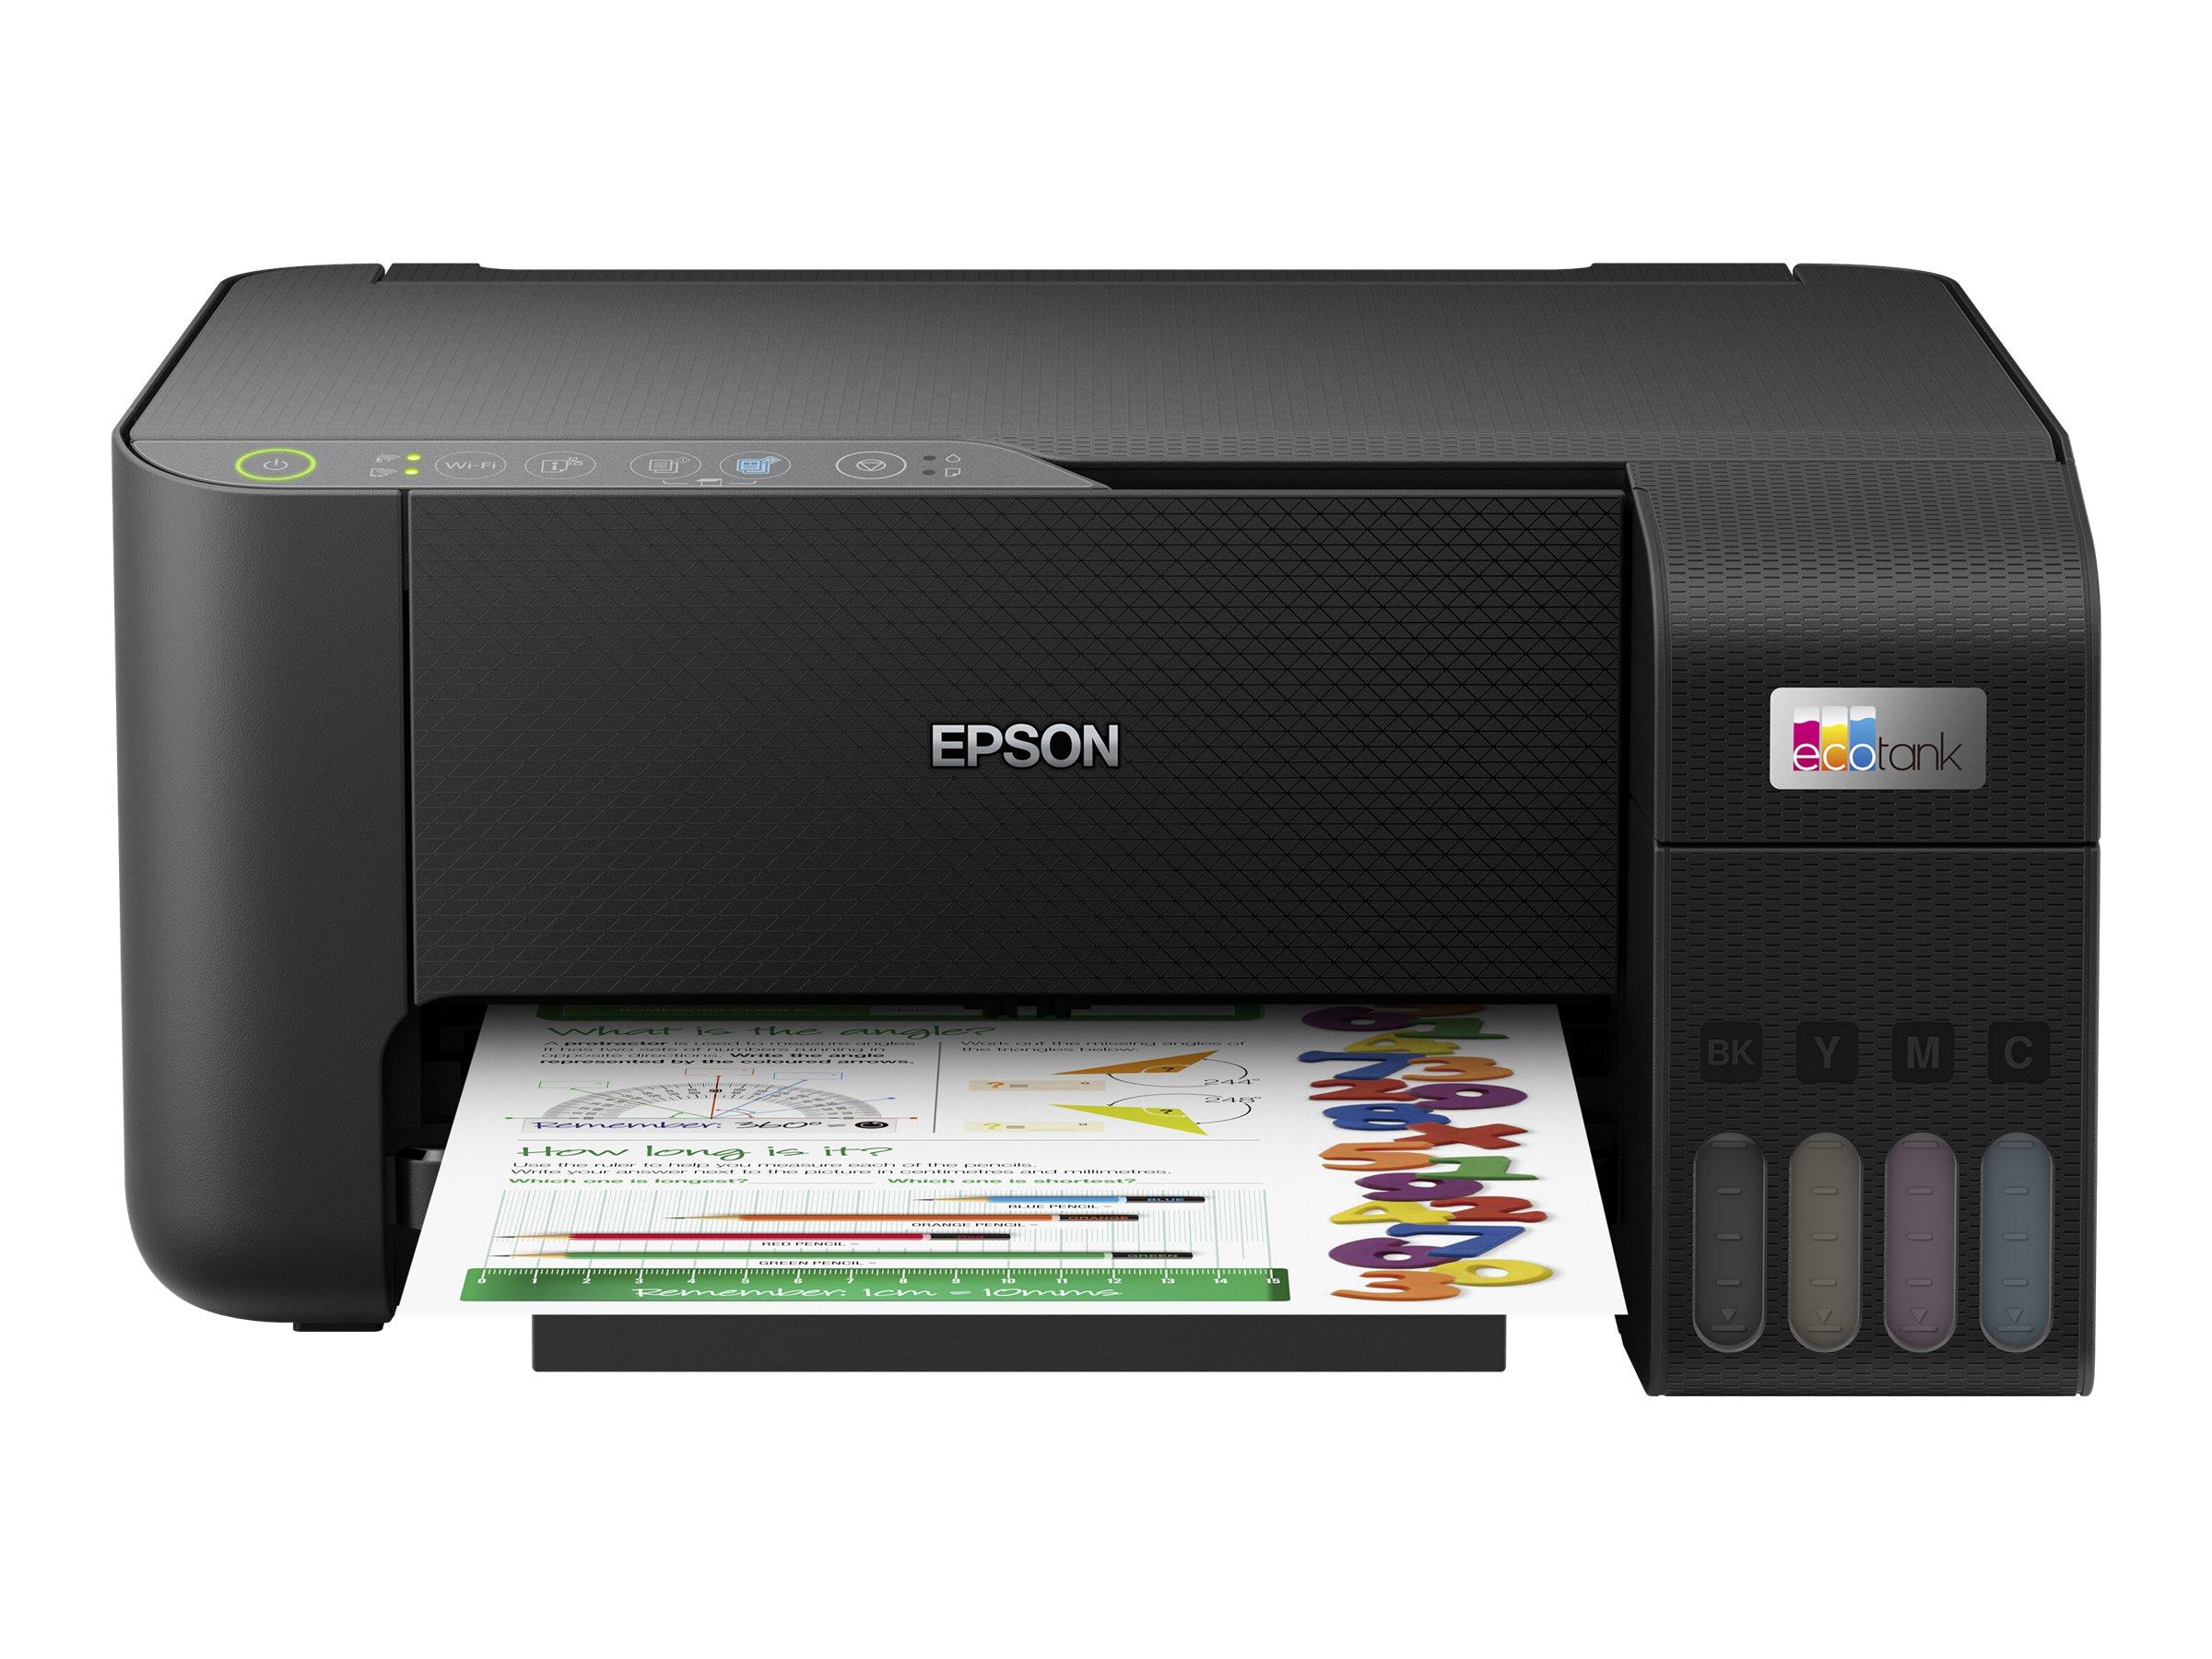 Daugiafunkcinis spausdintuvas Epson EcoTank L3250 Contact image sensor (CIS), 3-in-1, Wi-Fi, Juodas